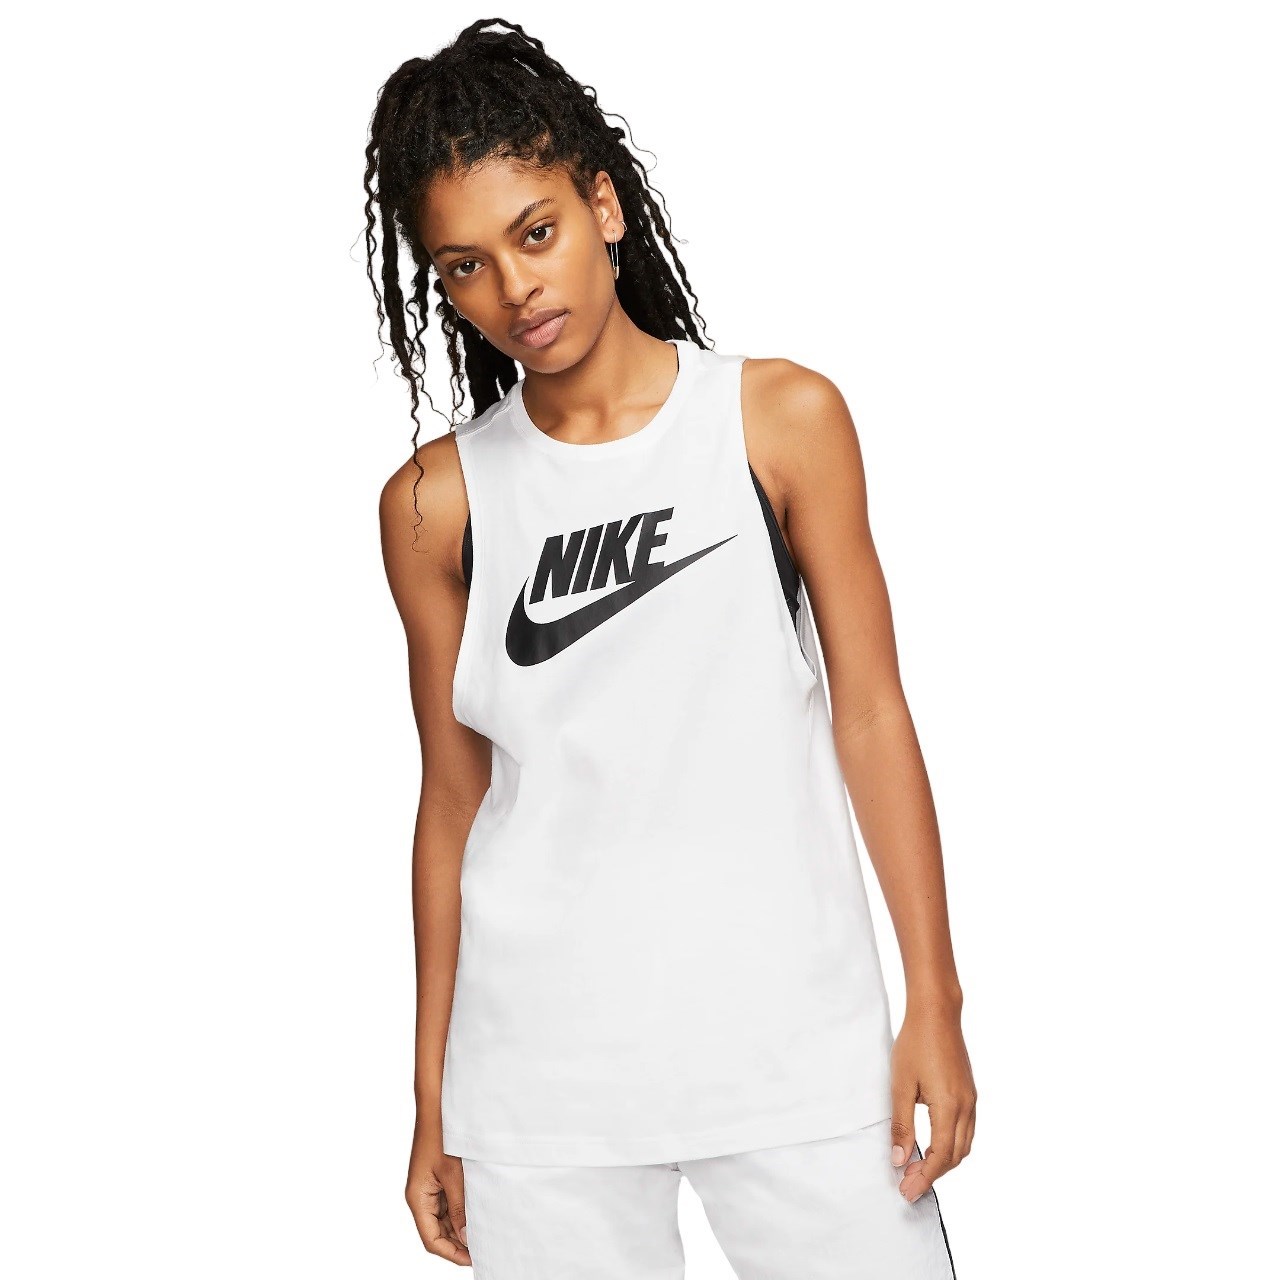 Nike Sportswear Womens Muscle Tank Top - White/Black